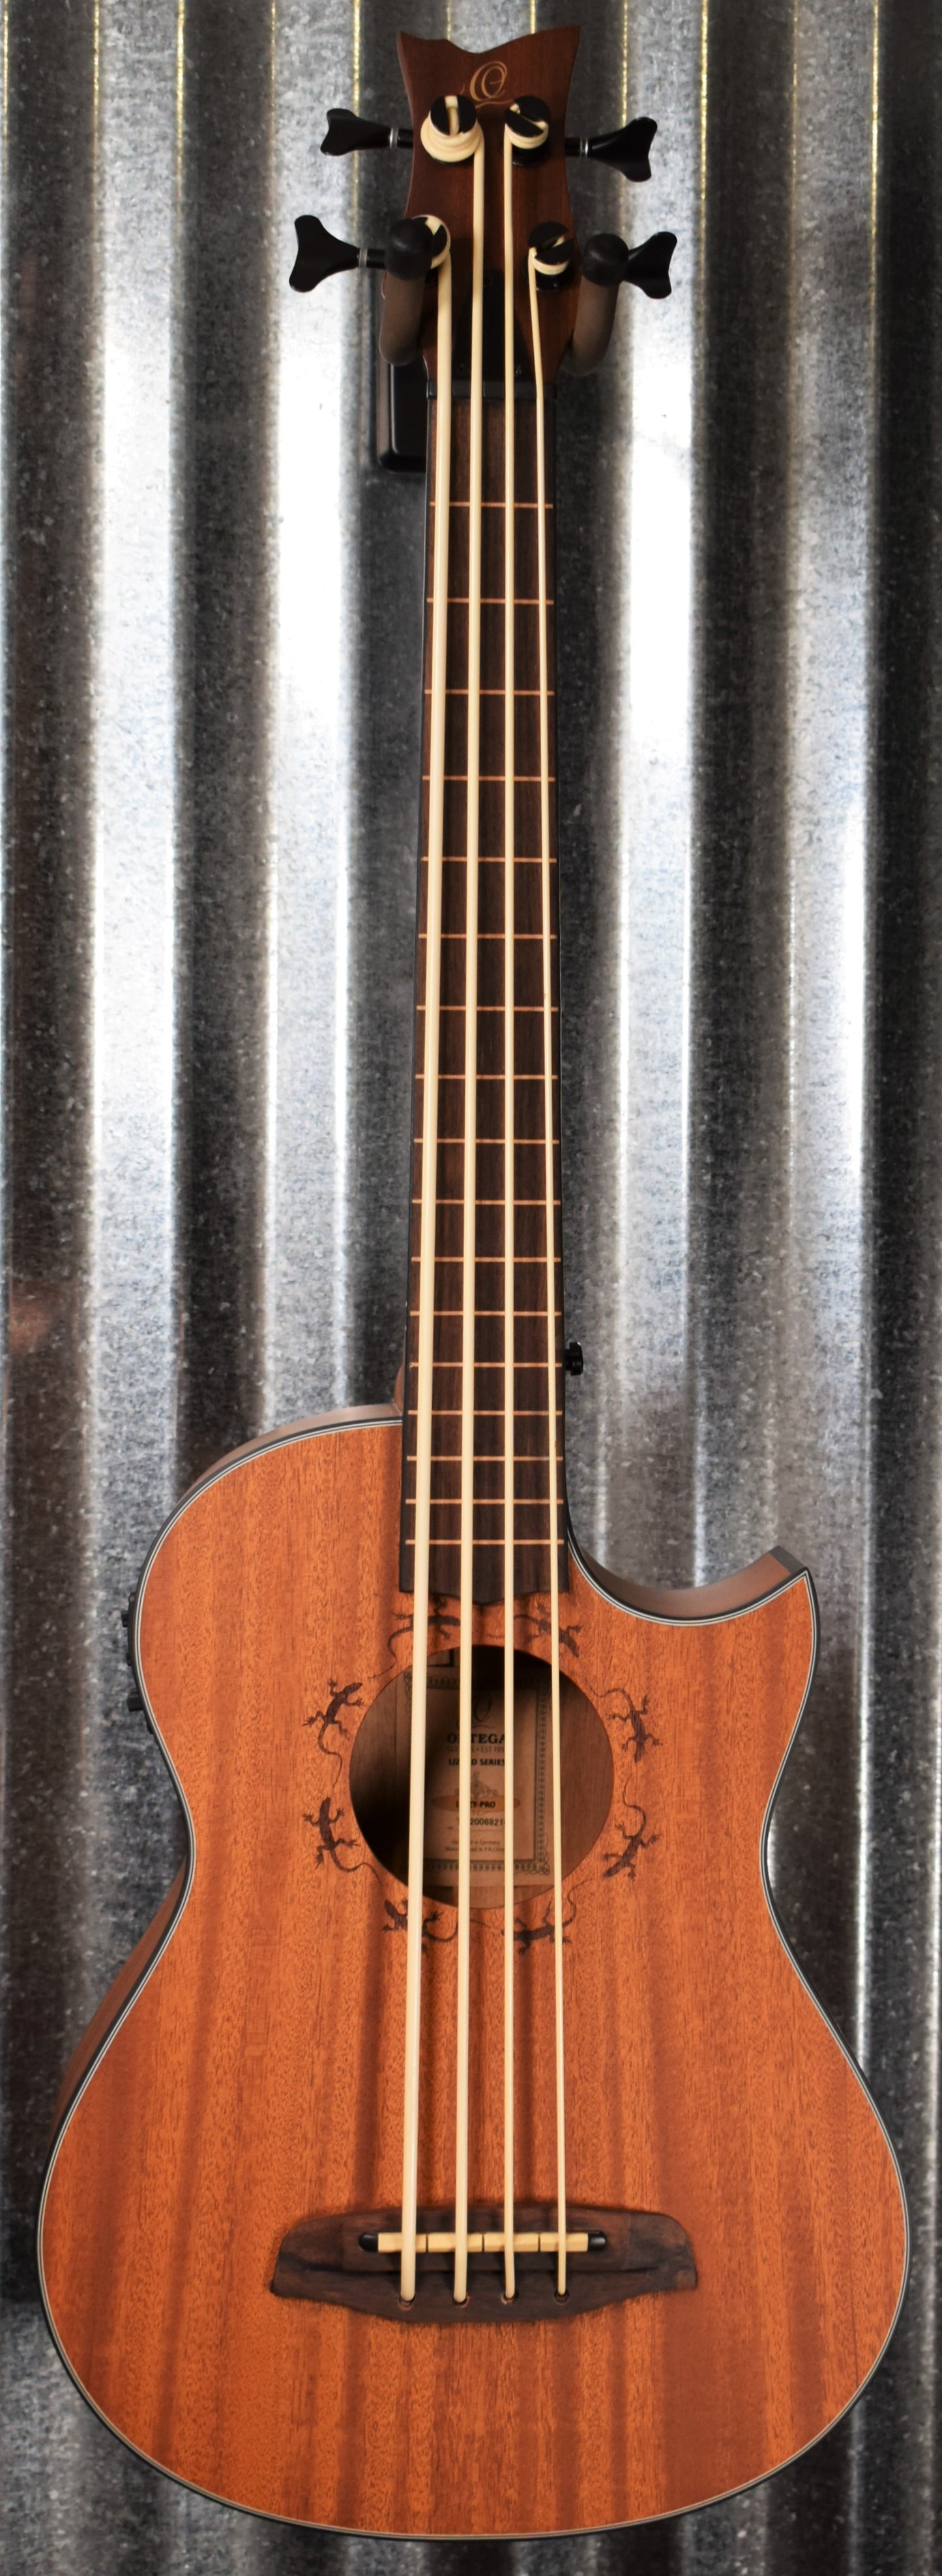 Ortega Lizzy Pro Acoustic Electric Lined Fretless Ukulele U Bass & Bag #8210